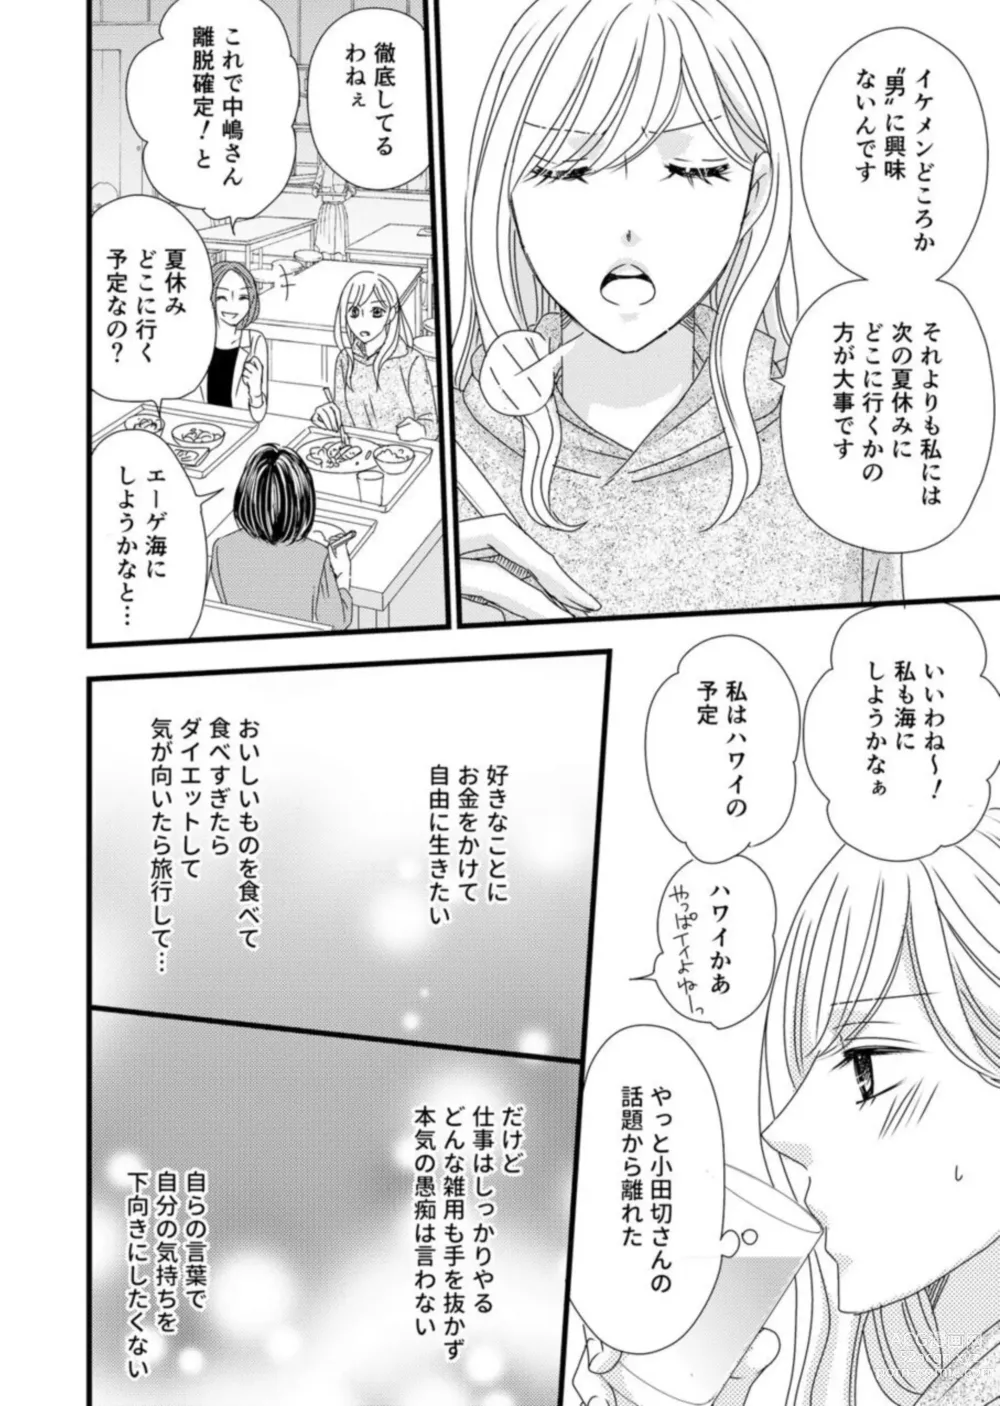 Page 18 of manga Takane no koi wa Mendokusai 1